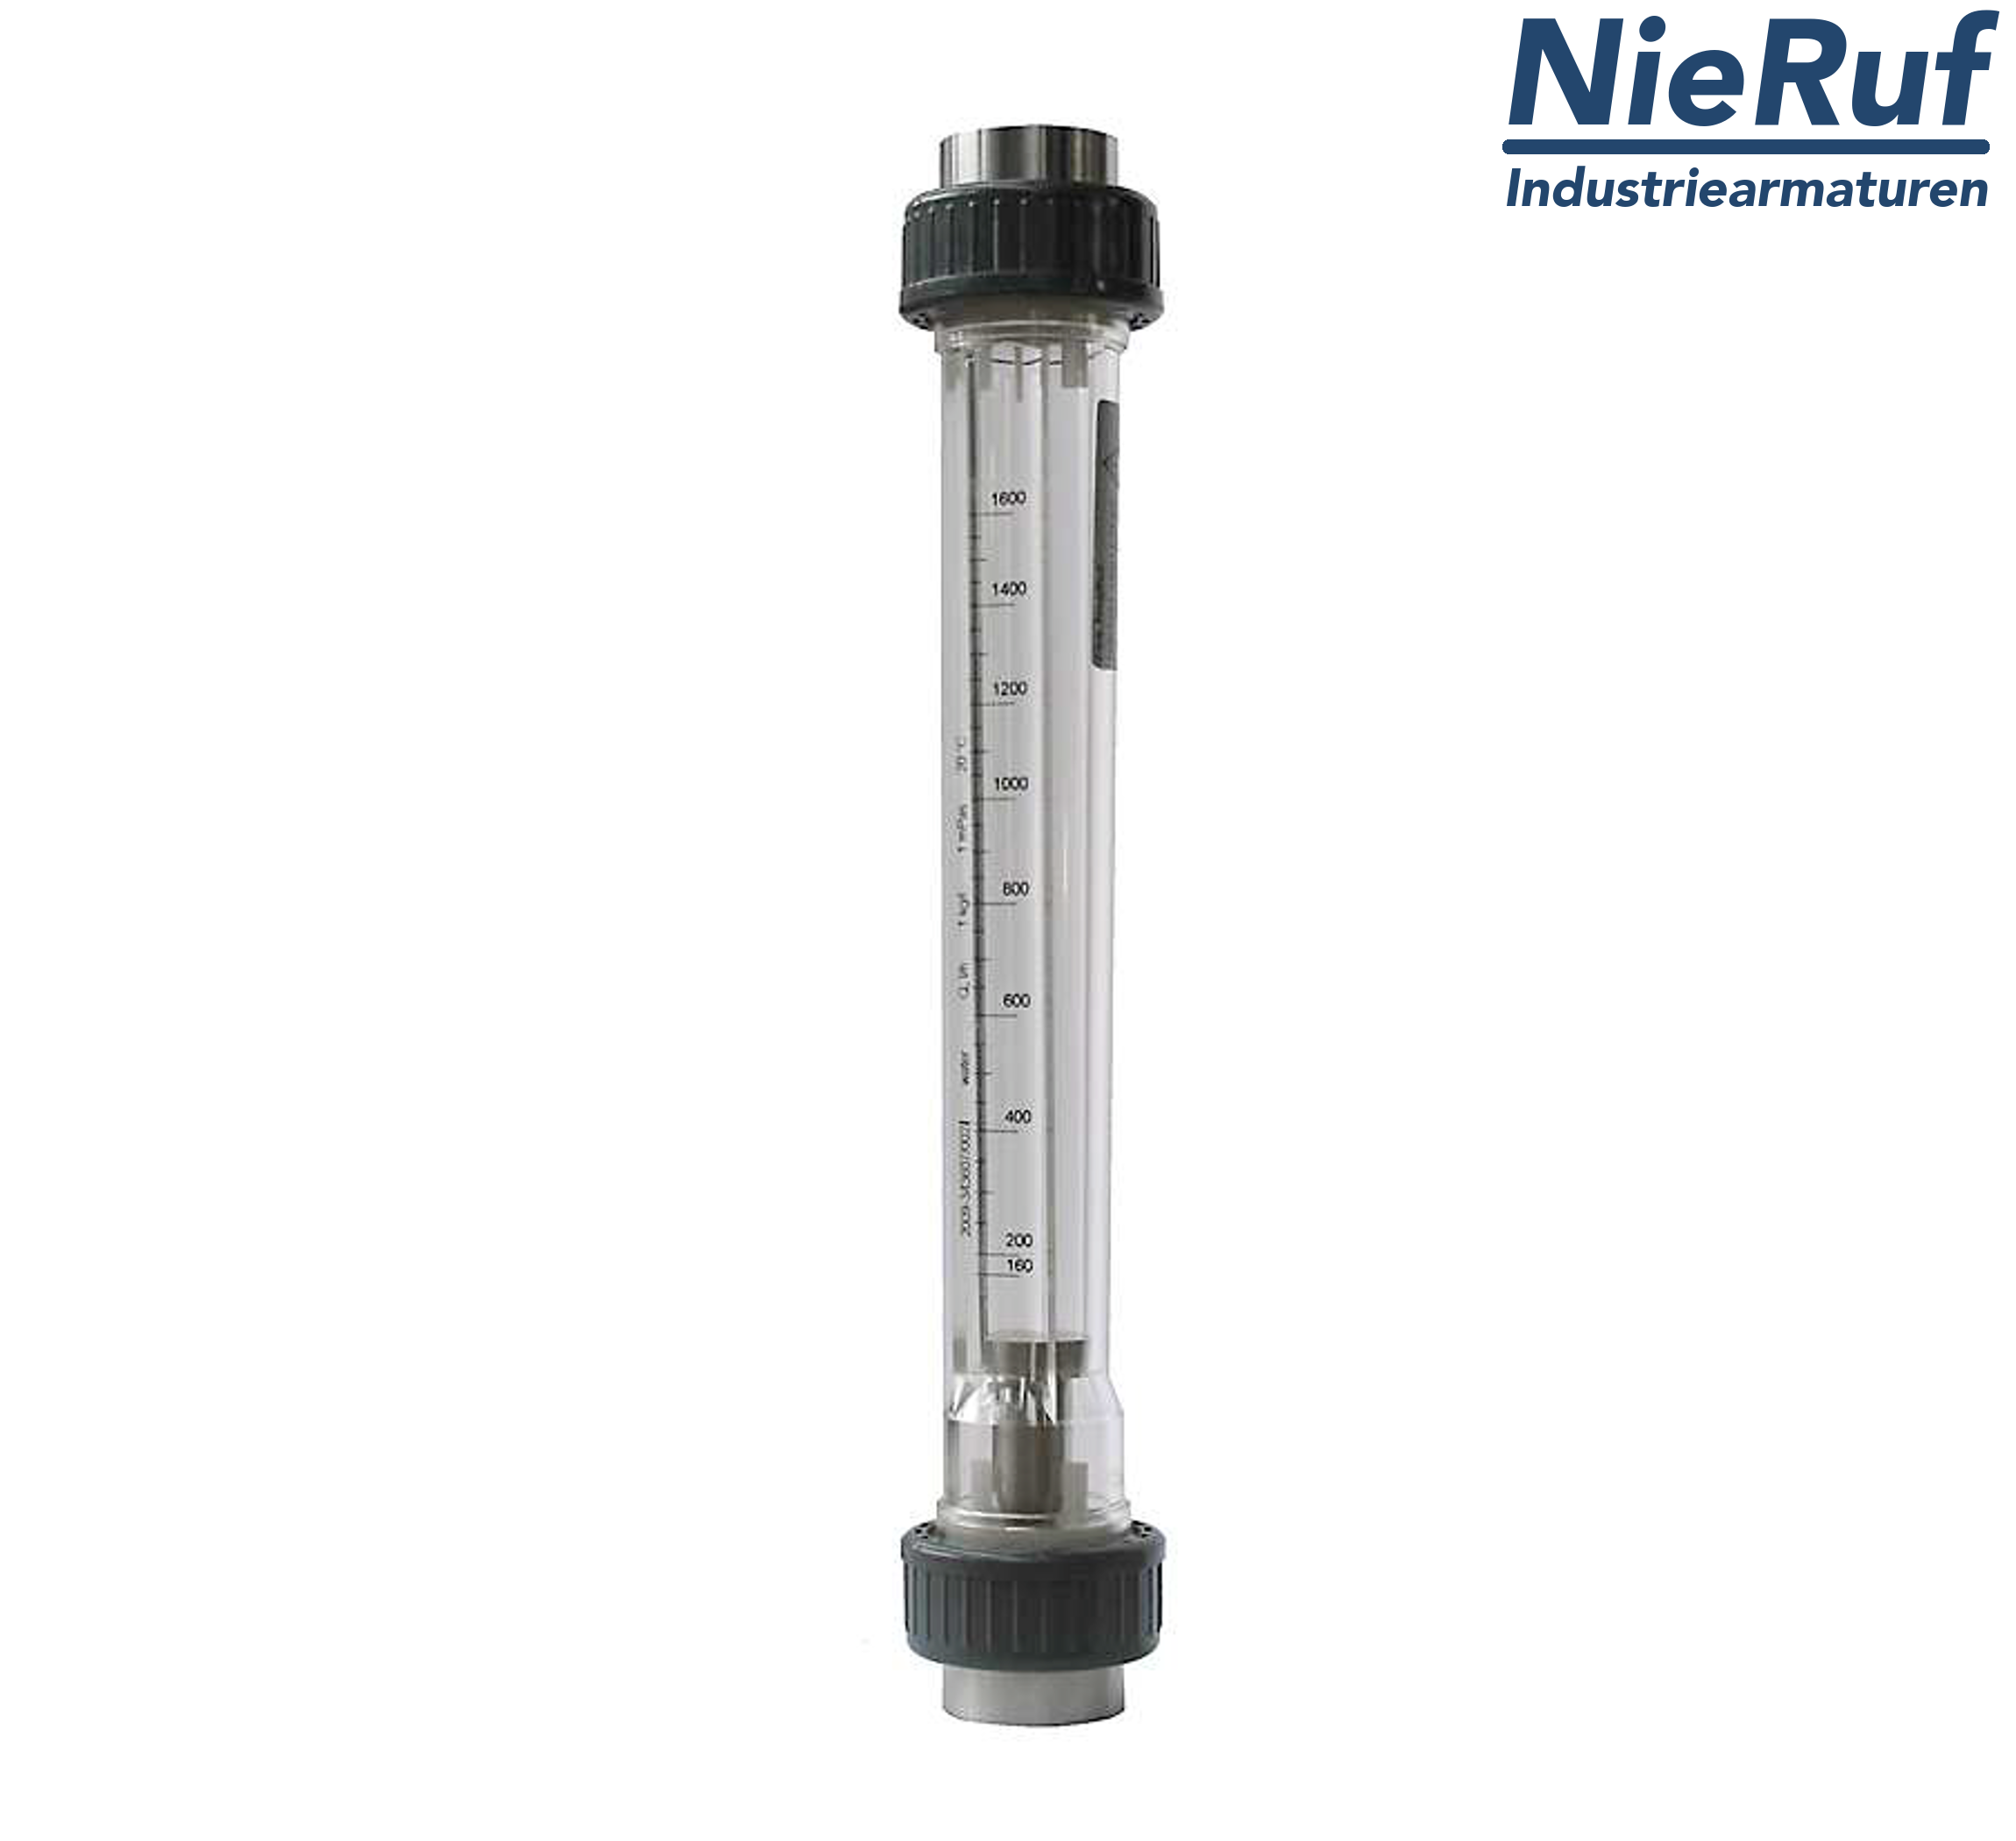 Variable area flowmeter 1 1/2" Inch NPT 16000.0 - 160000 l/h air NBR